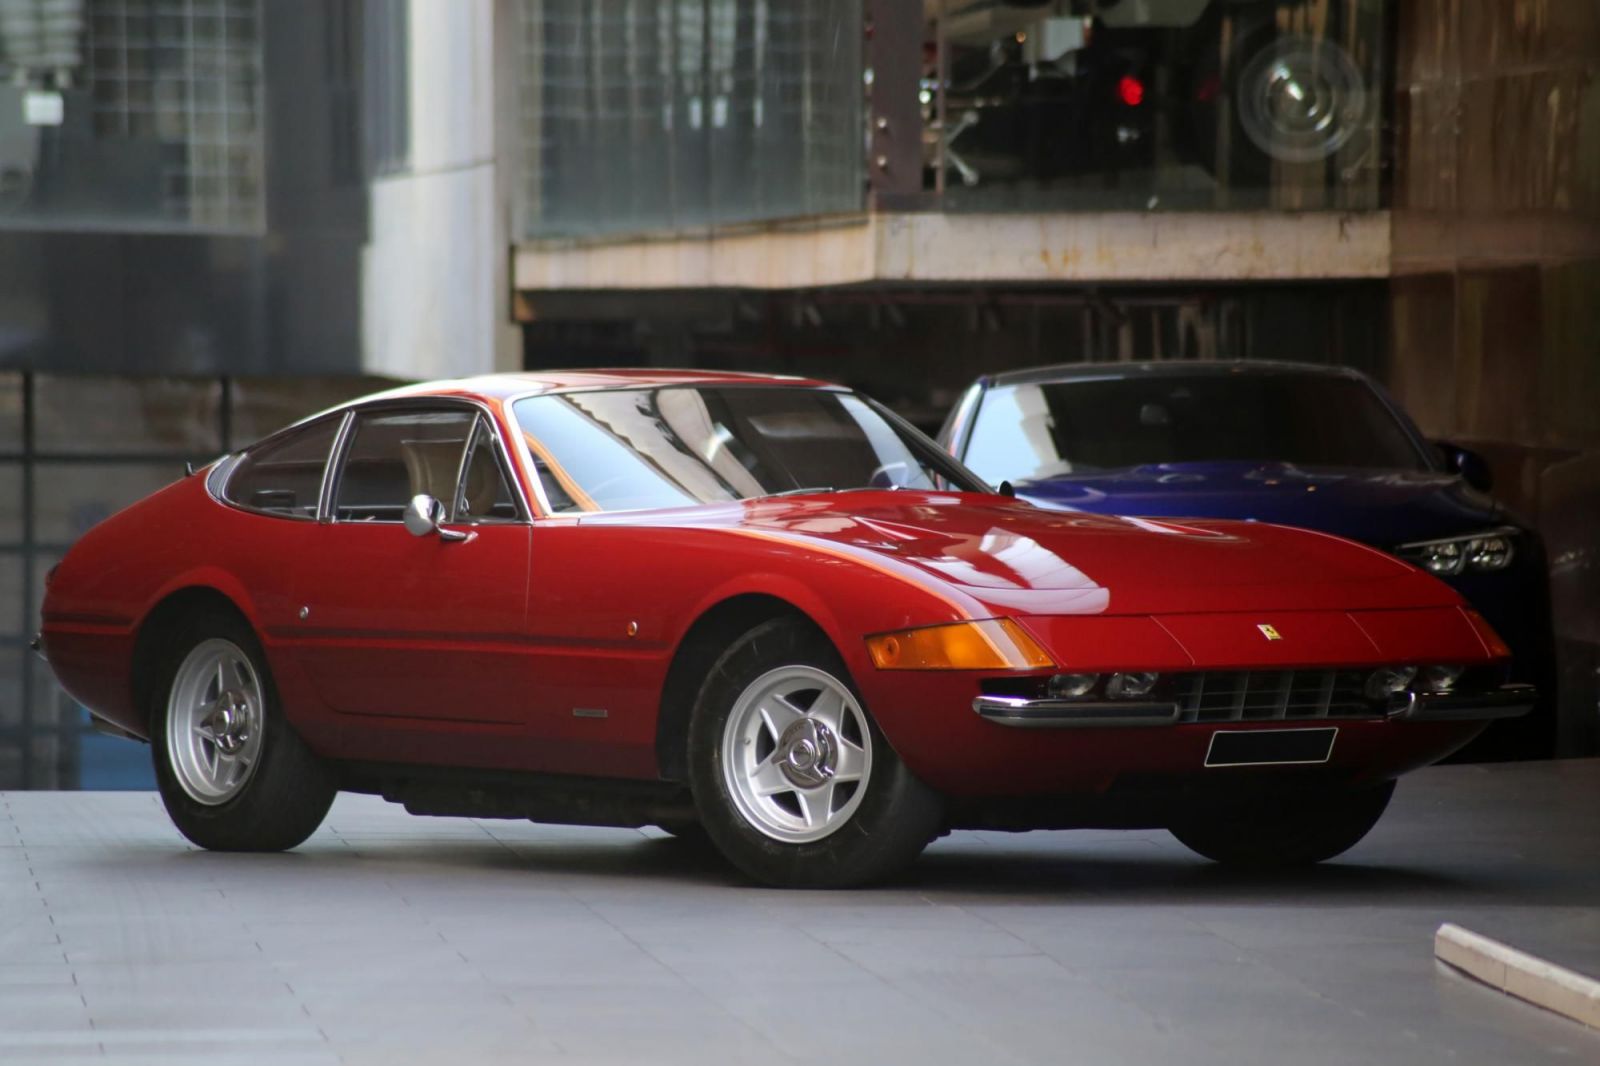 Ferrari 365. Ferrari 365 GTB/4 1973. Феррари 365 GTB/4 Daytona. Ferrari 365 GTB/4. Ferrari Daytona 1973.